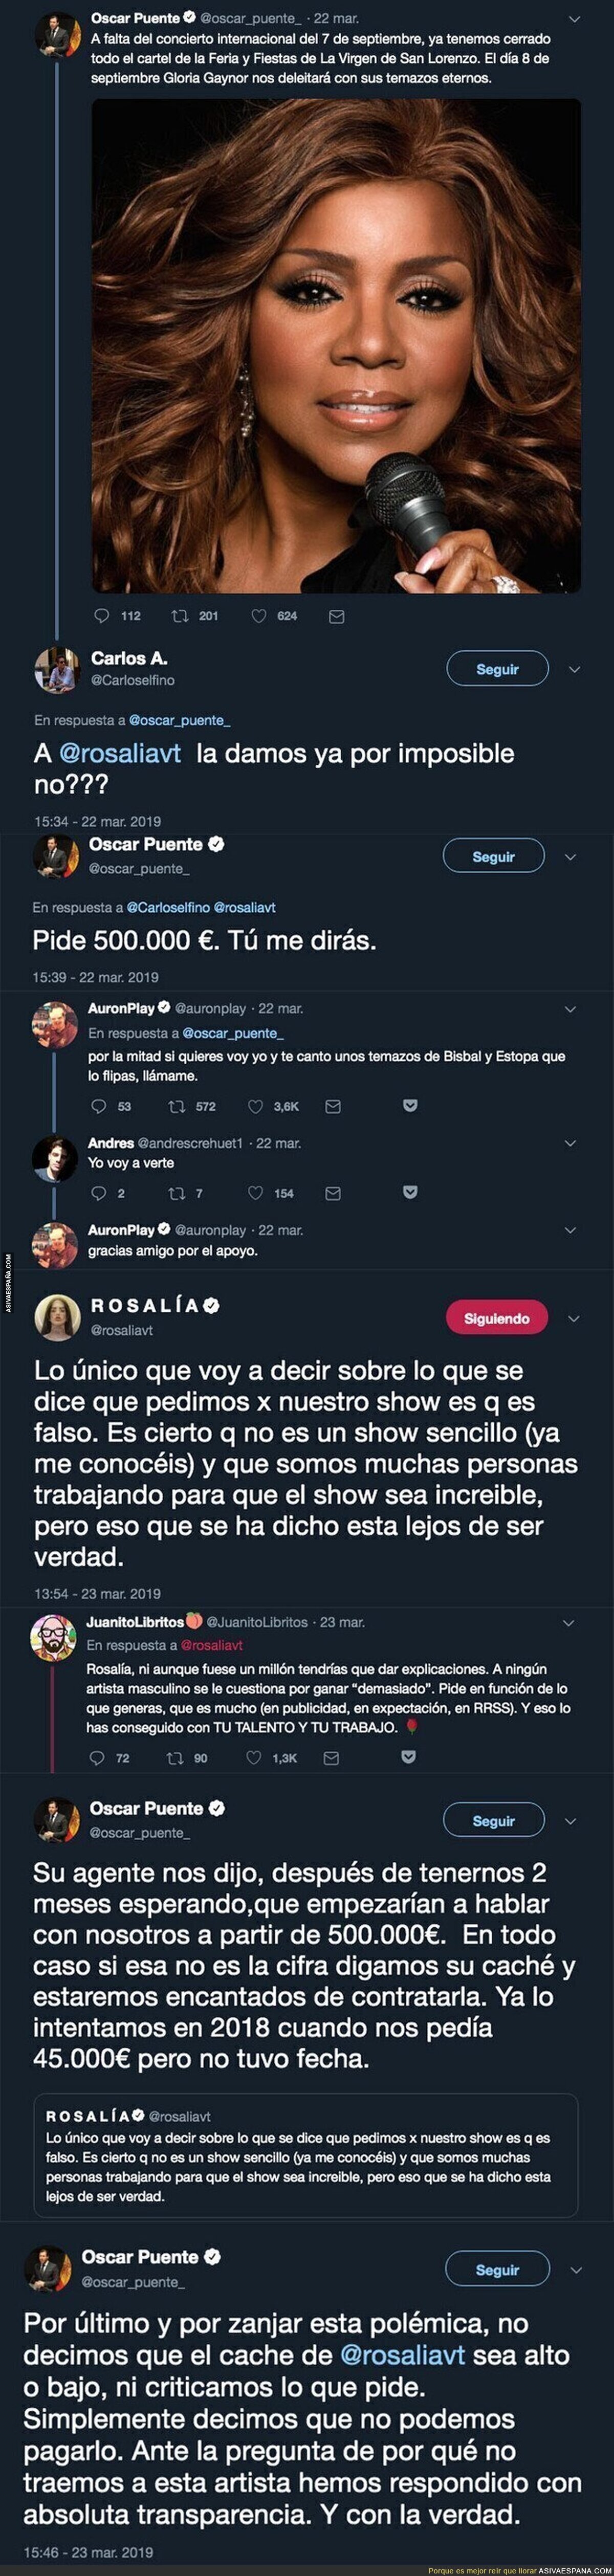 Óscar Puente, el alcalde de Valladolid la lía máximo en Twitter desvelando el caché de Rosalía